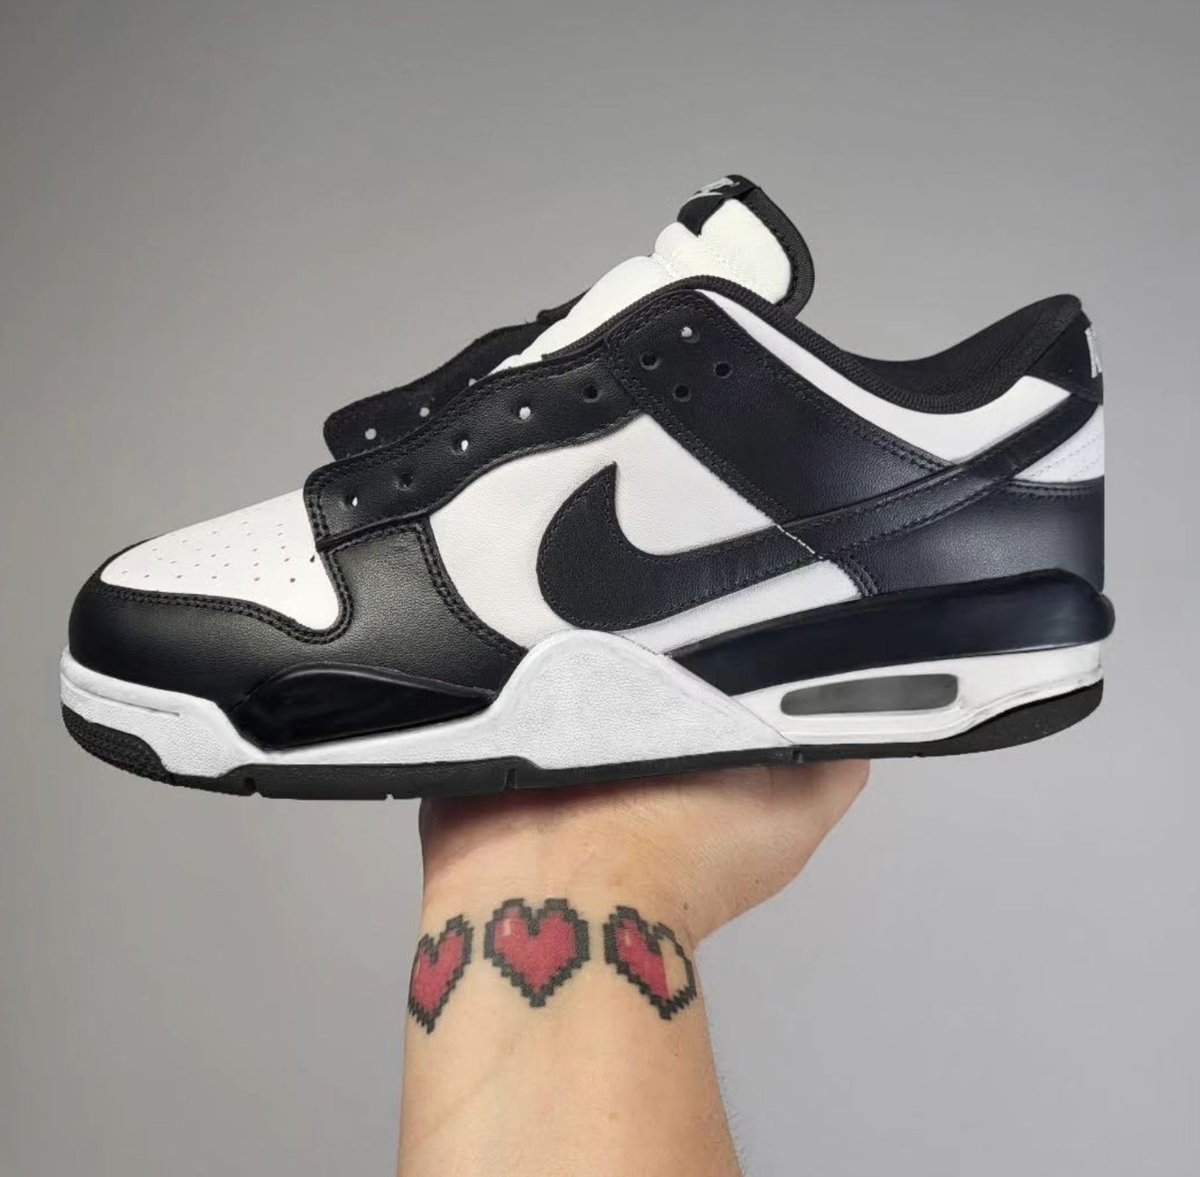 👍 or 👎 on this Air Jordan 4/Nike Dunk Low mashup? 💭